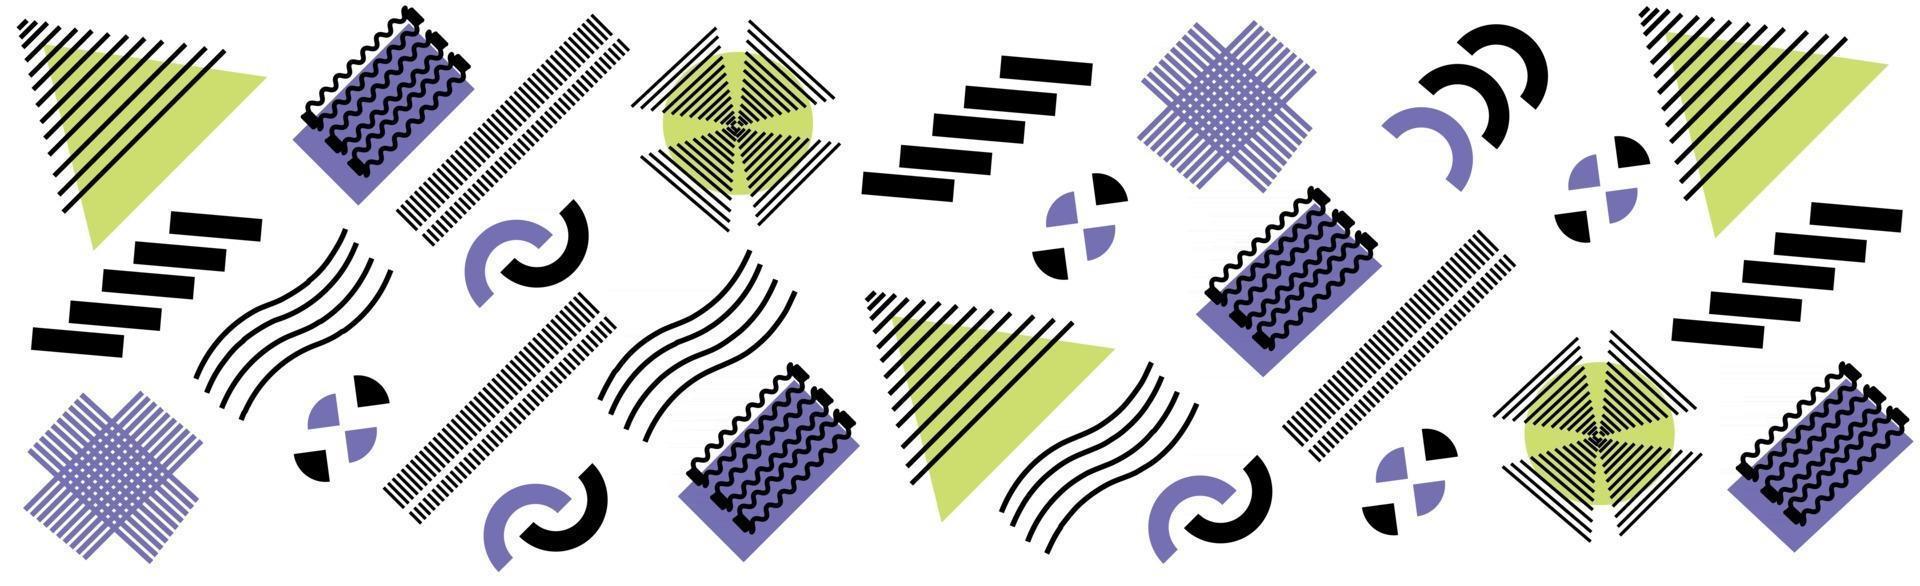 abstrait avec différentes formes géométriques - illustration vecteur